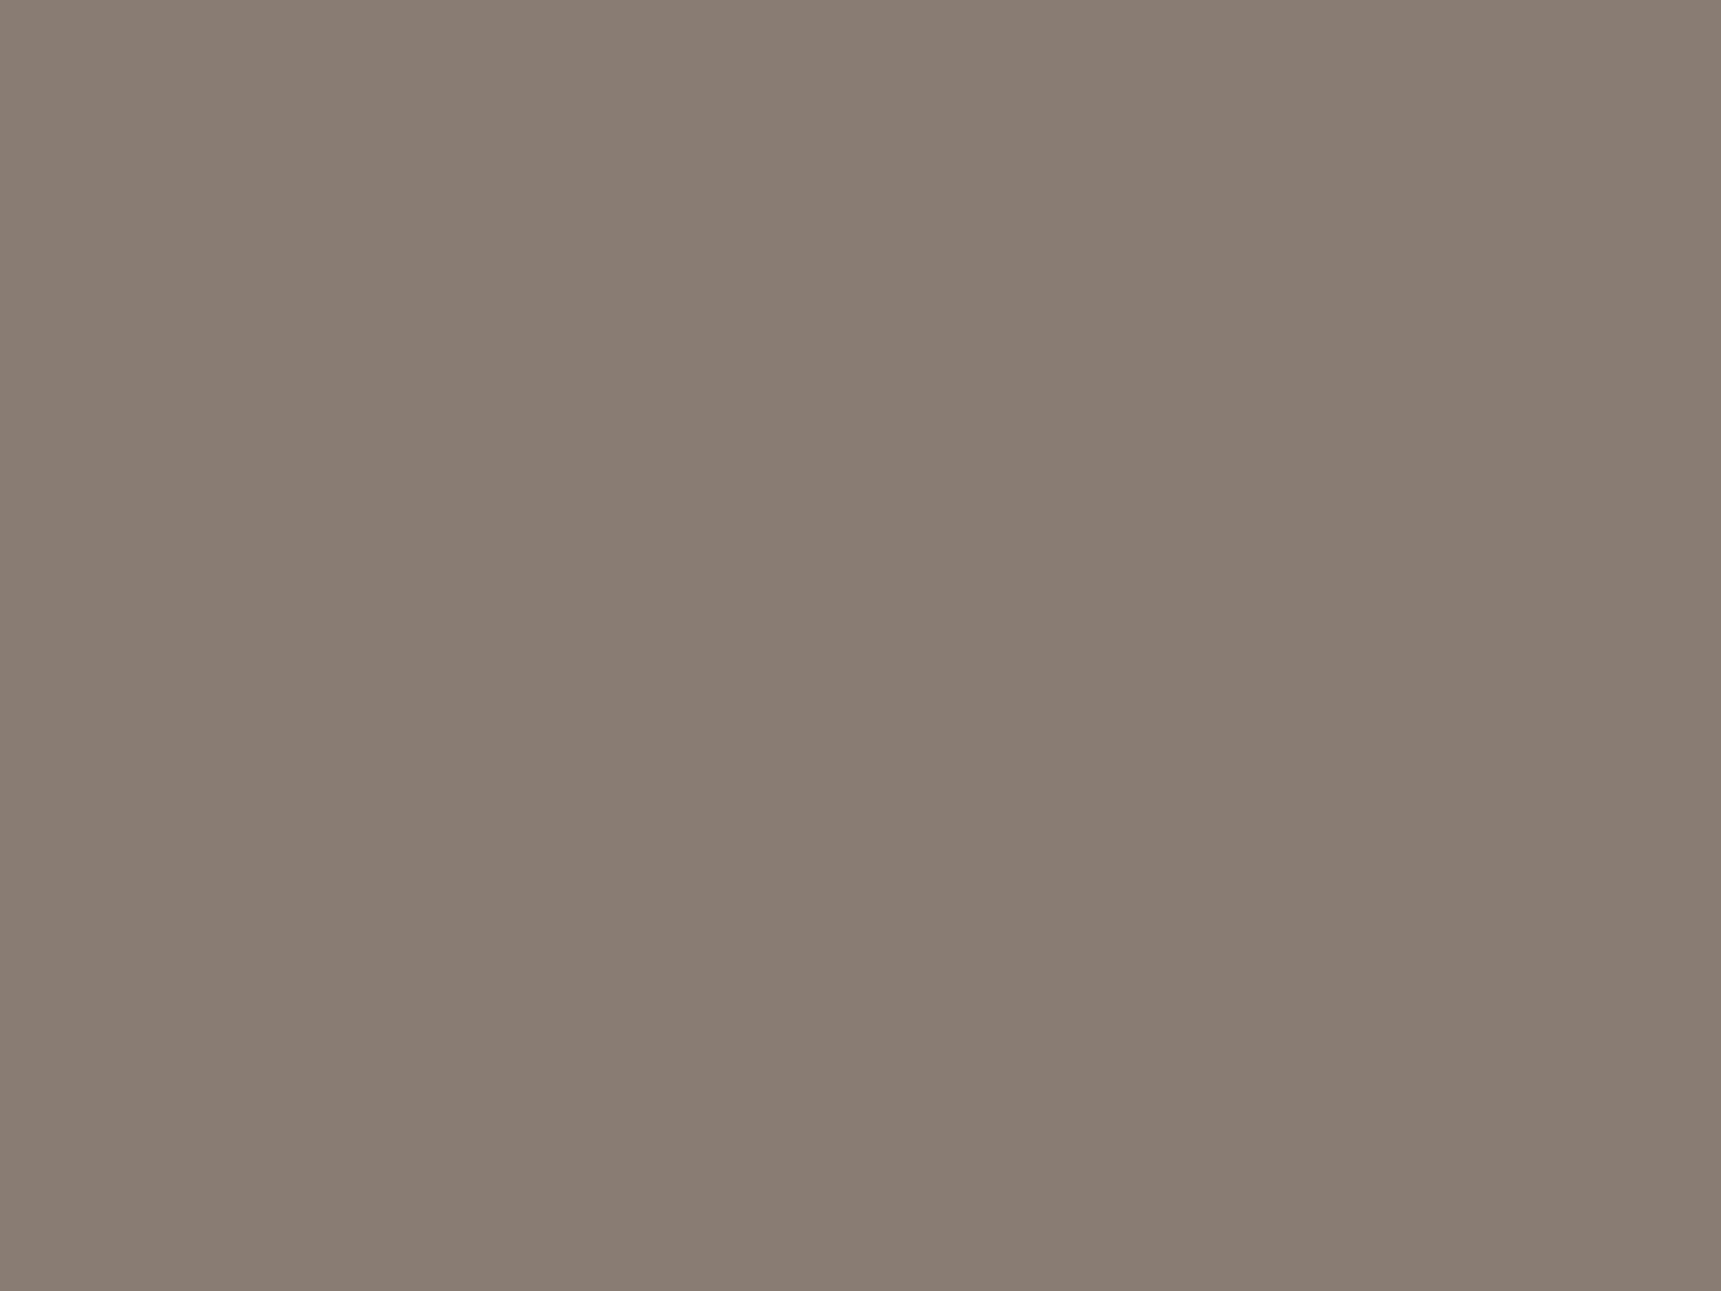 Адольф Гебенс. Чины Лейб-гвардии Конно-гренадерского полка (фрагмент). 1853. Государственный музей-заповедник «Царское Село», Санкт-Петербург